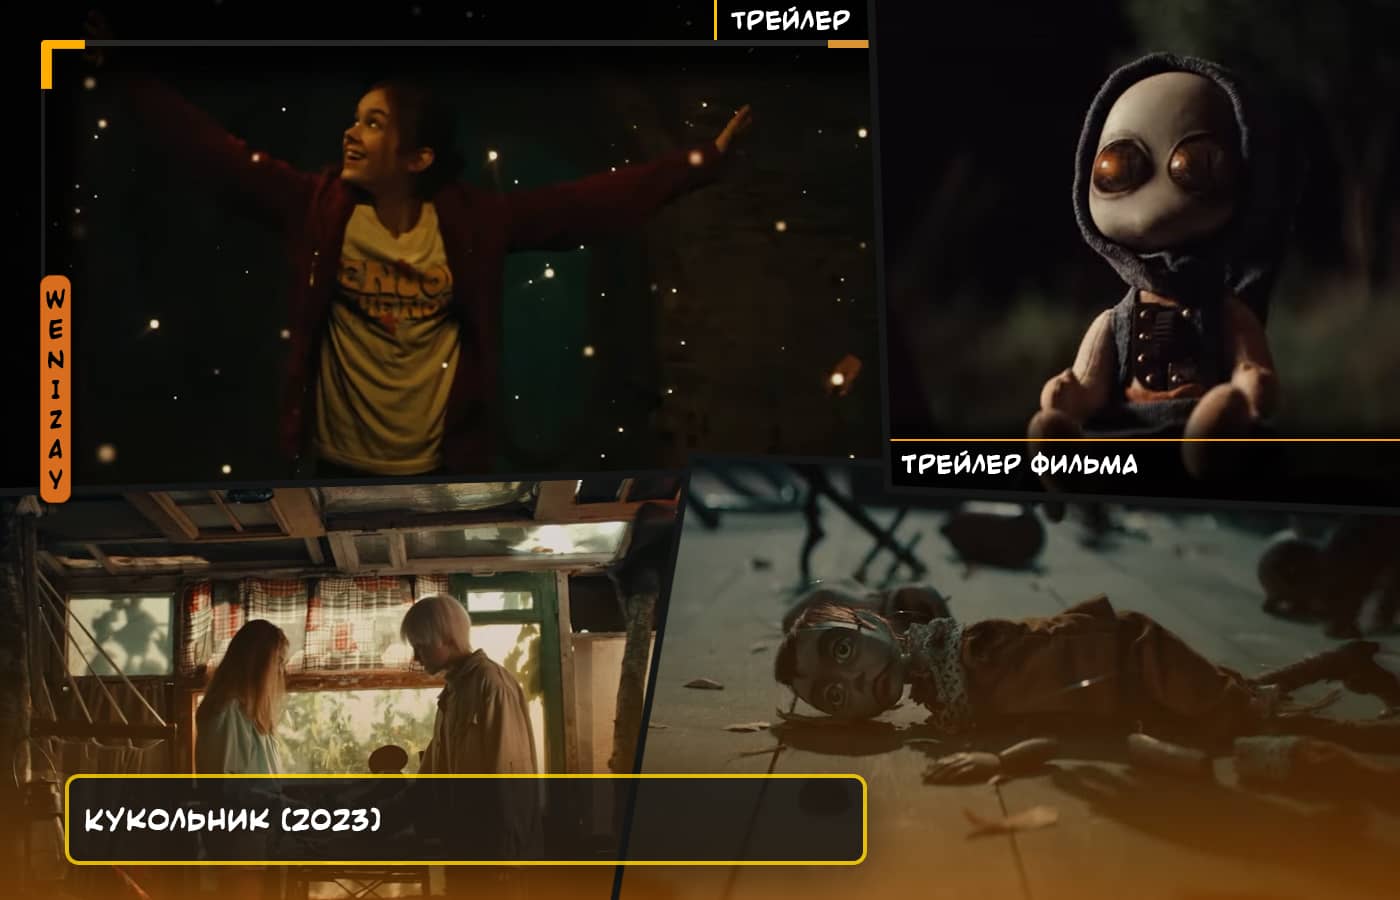 Смотрите трейлер фильма Кукольник (2023) - российский триллер, который вызывает невероятное напряжение